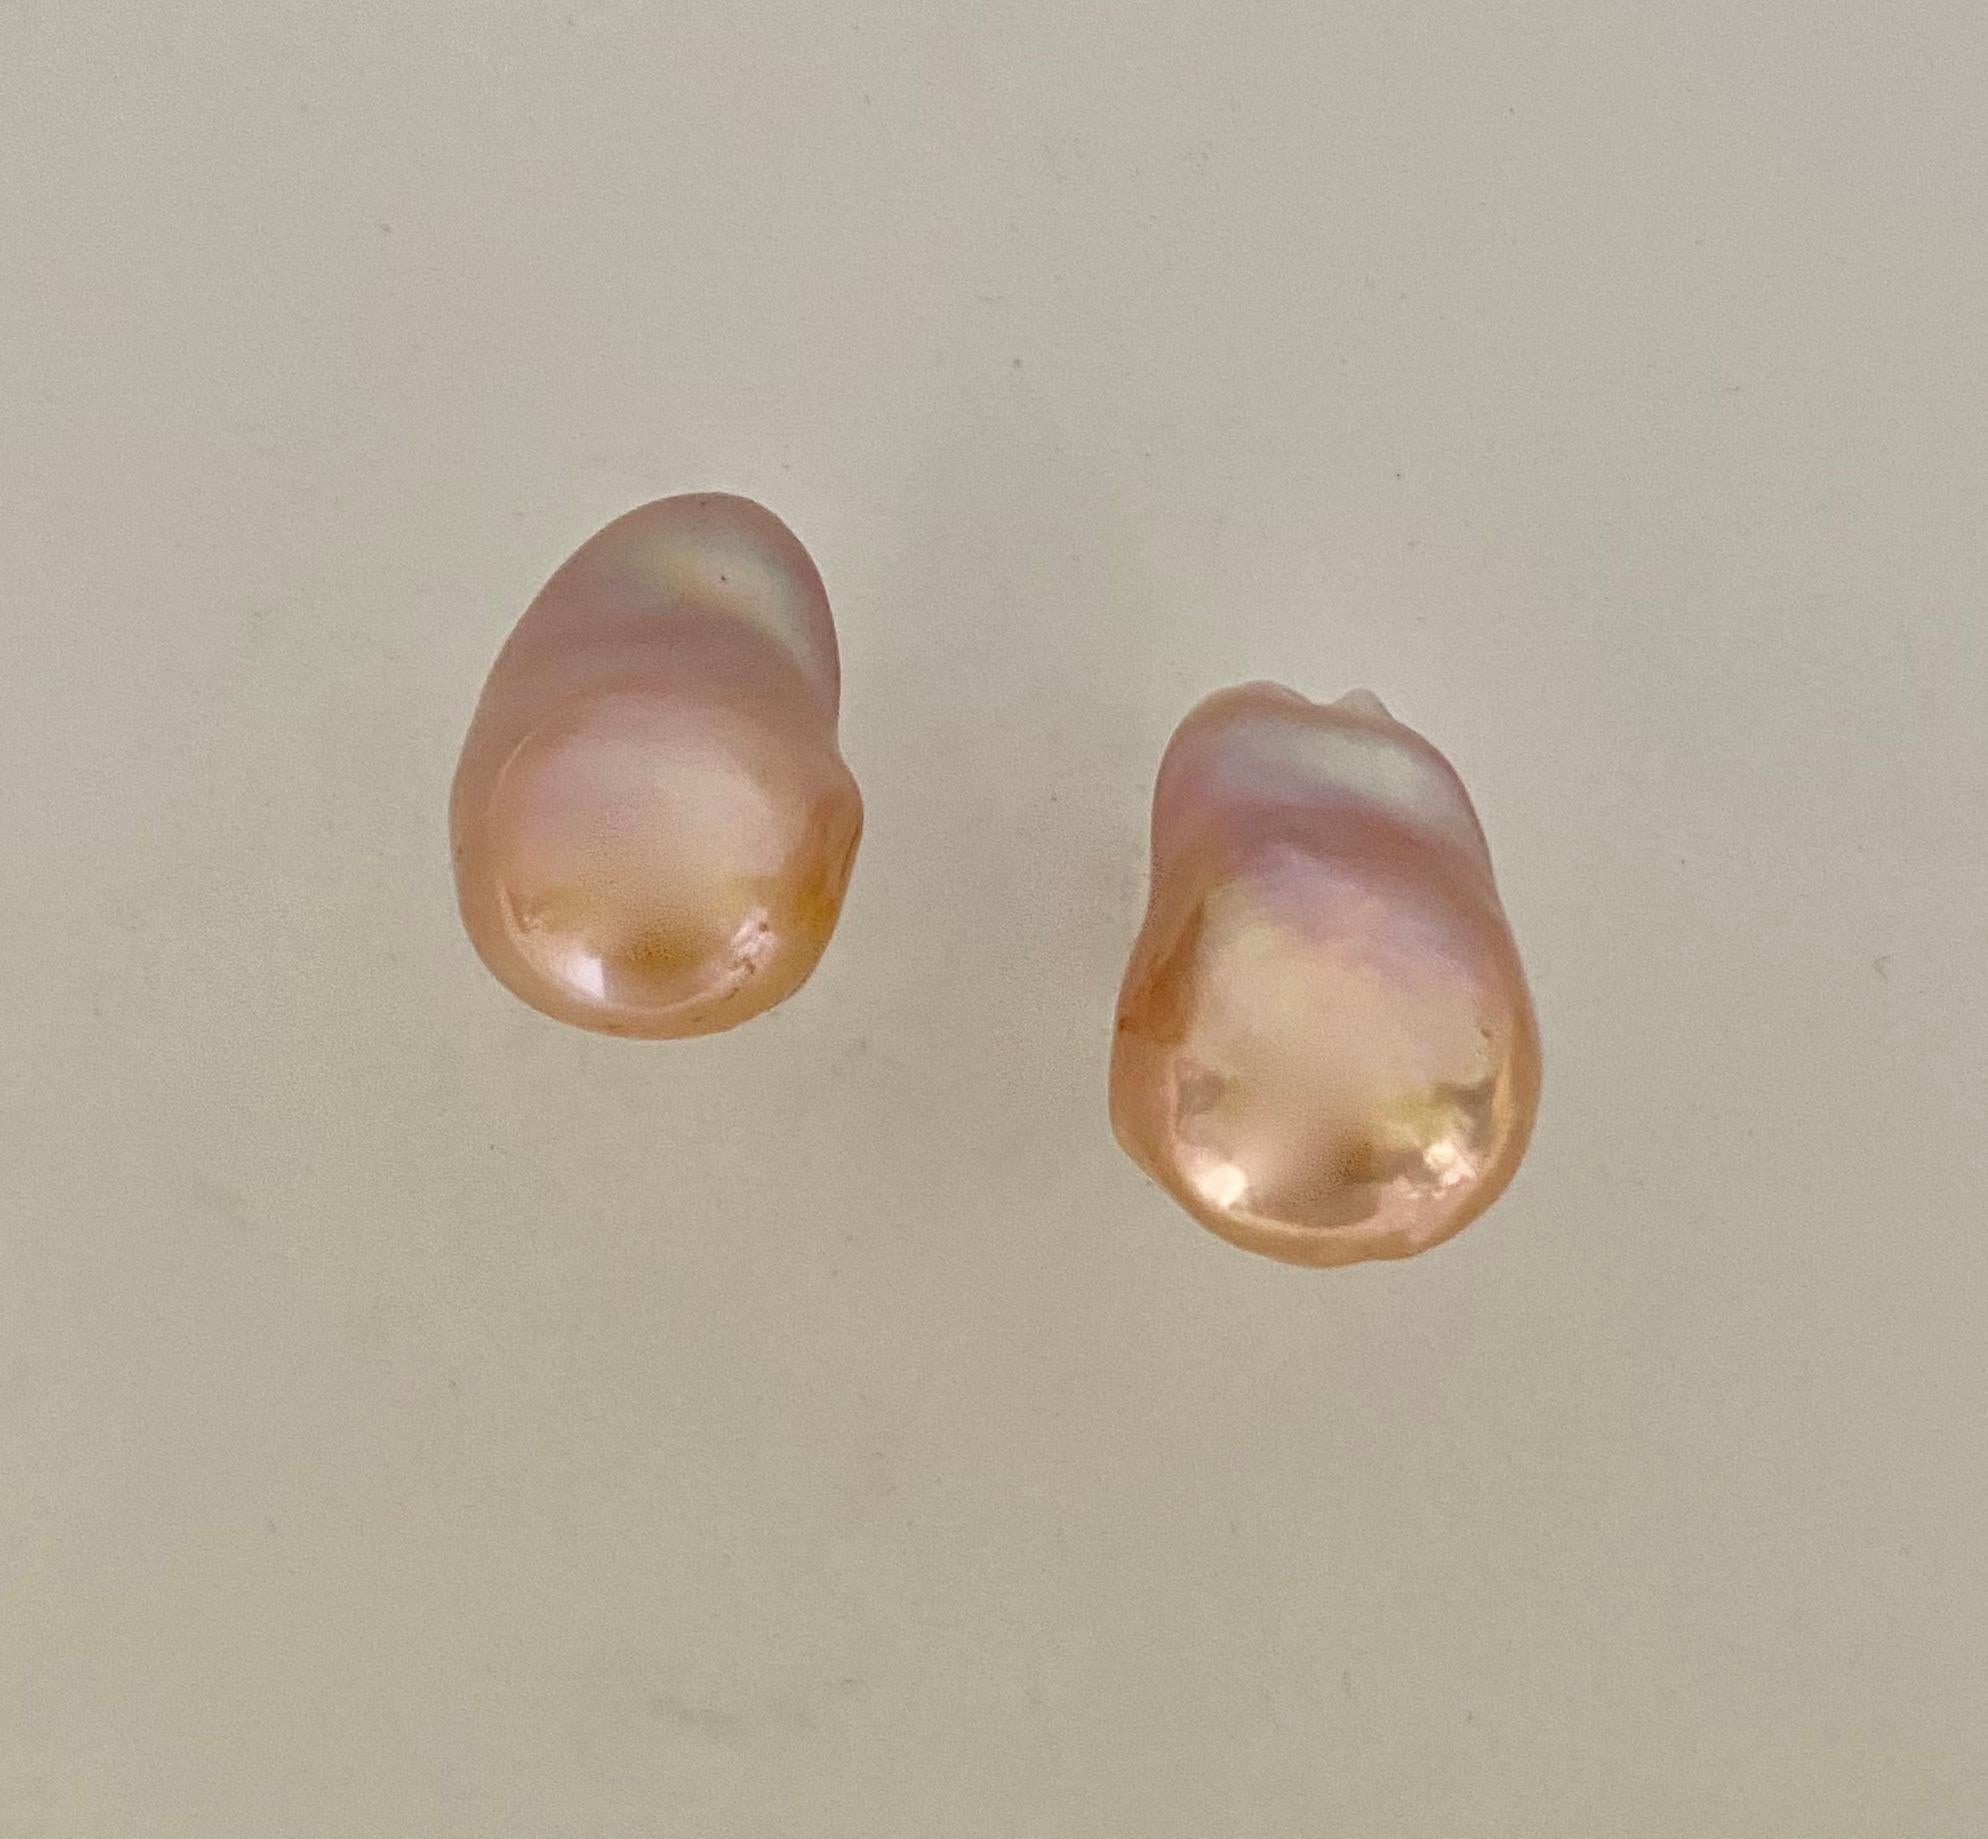 Des perles baroques sont présentées dans ces boucles d'oreilles classiques et élégantes.  Les perles d'eau douce (origine : Chine) sont d'une couleur pêche/rose luxuriante.  Elles possèdent le riche lustre qui fait la réputation des perles d'eau